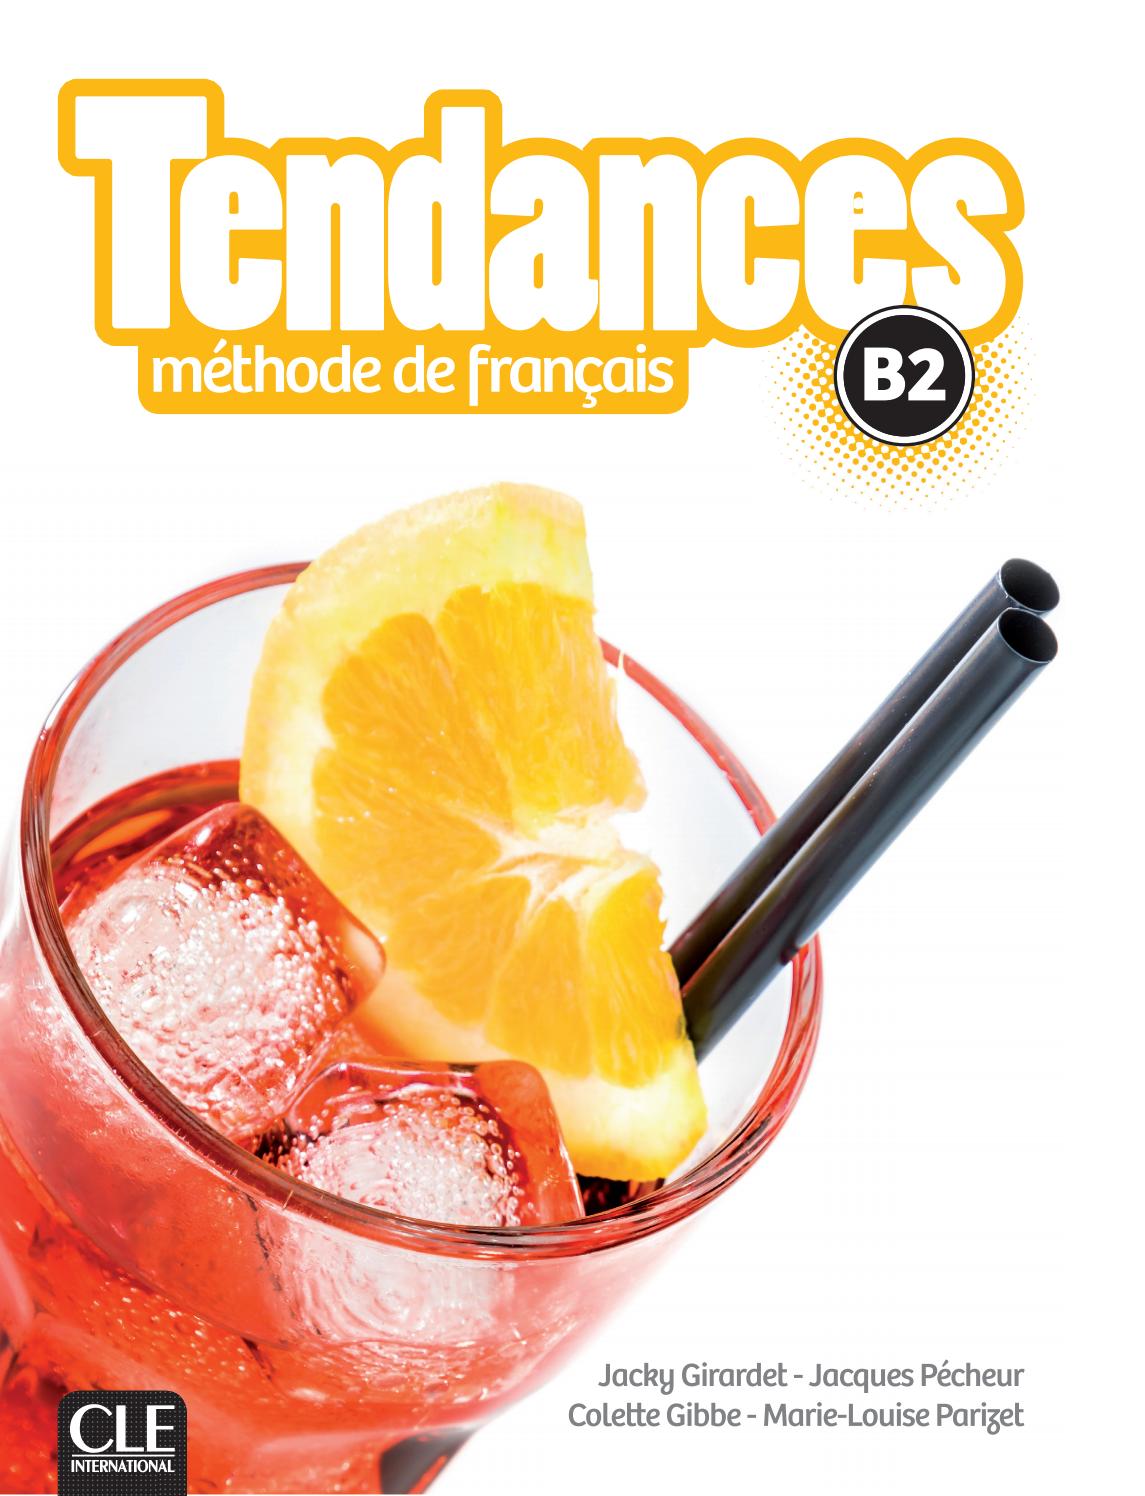 法语教材 |Tendances B2 青少年和成人 法语教材 Clé International出版社